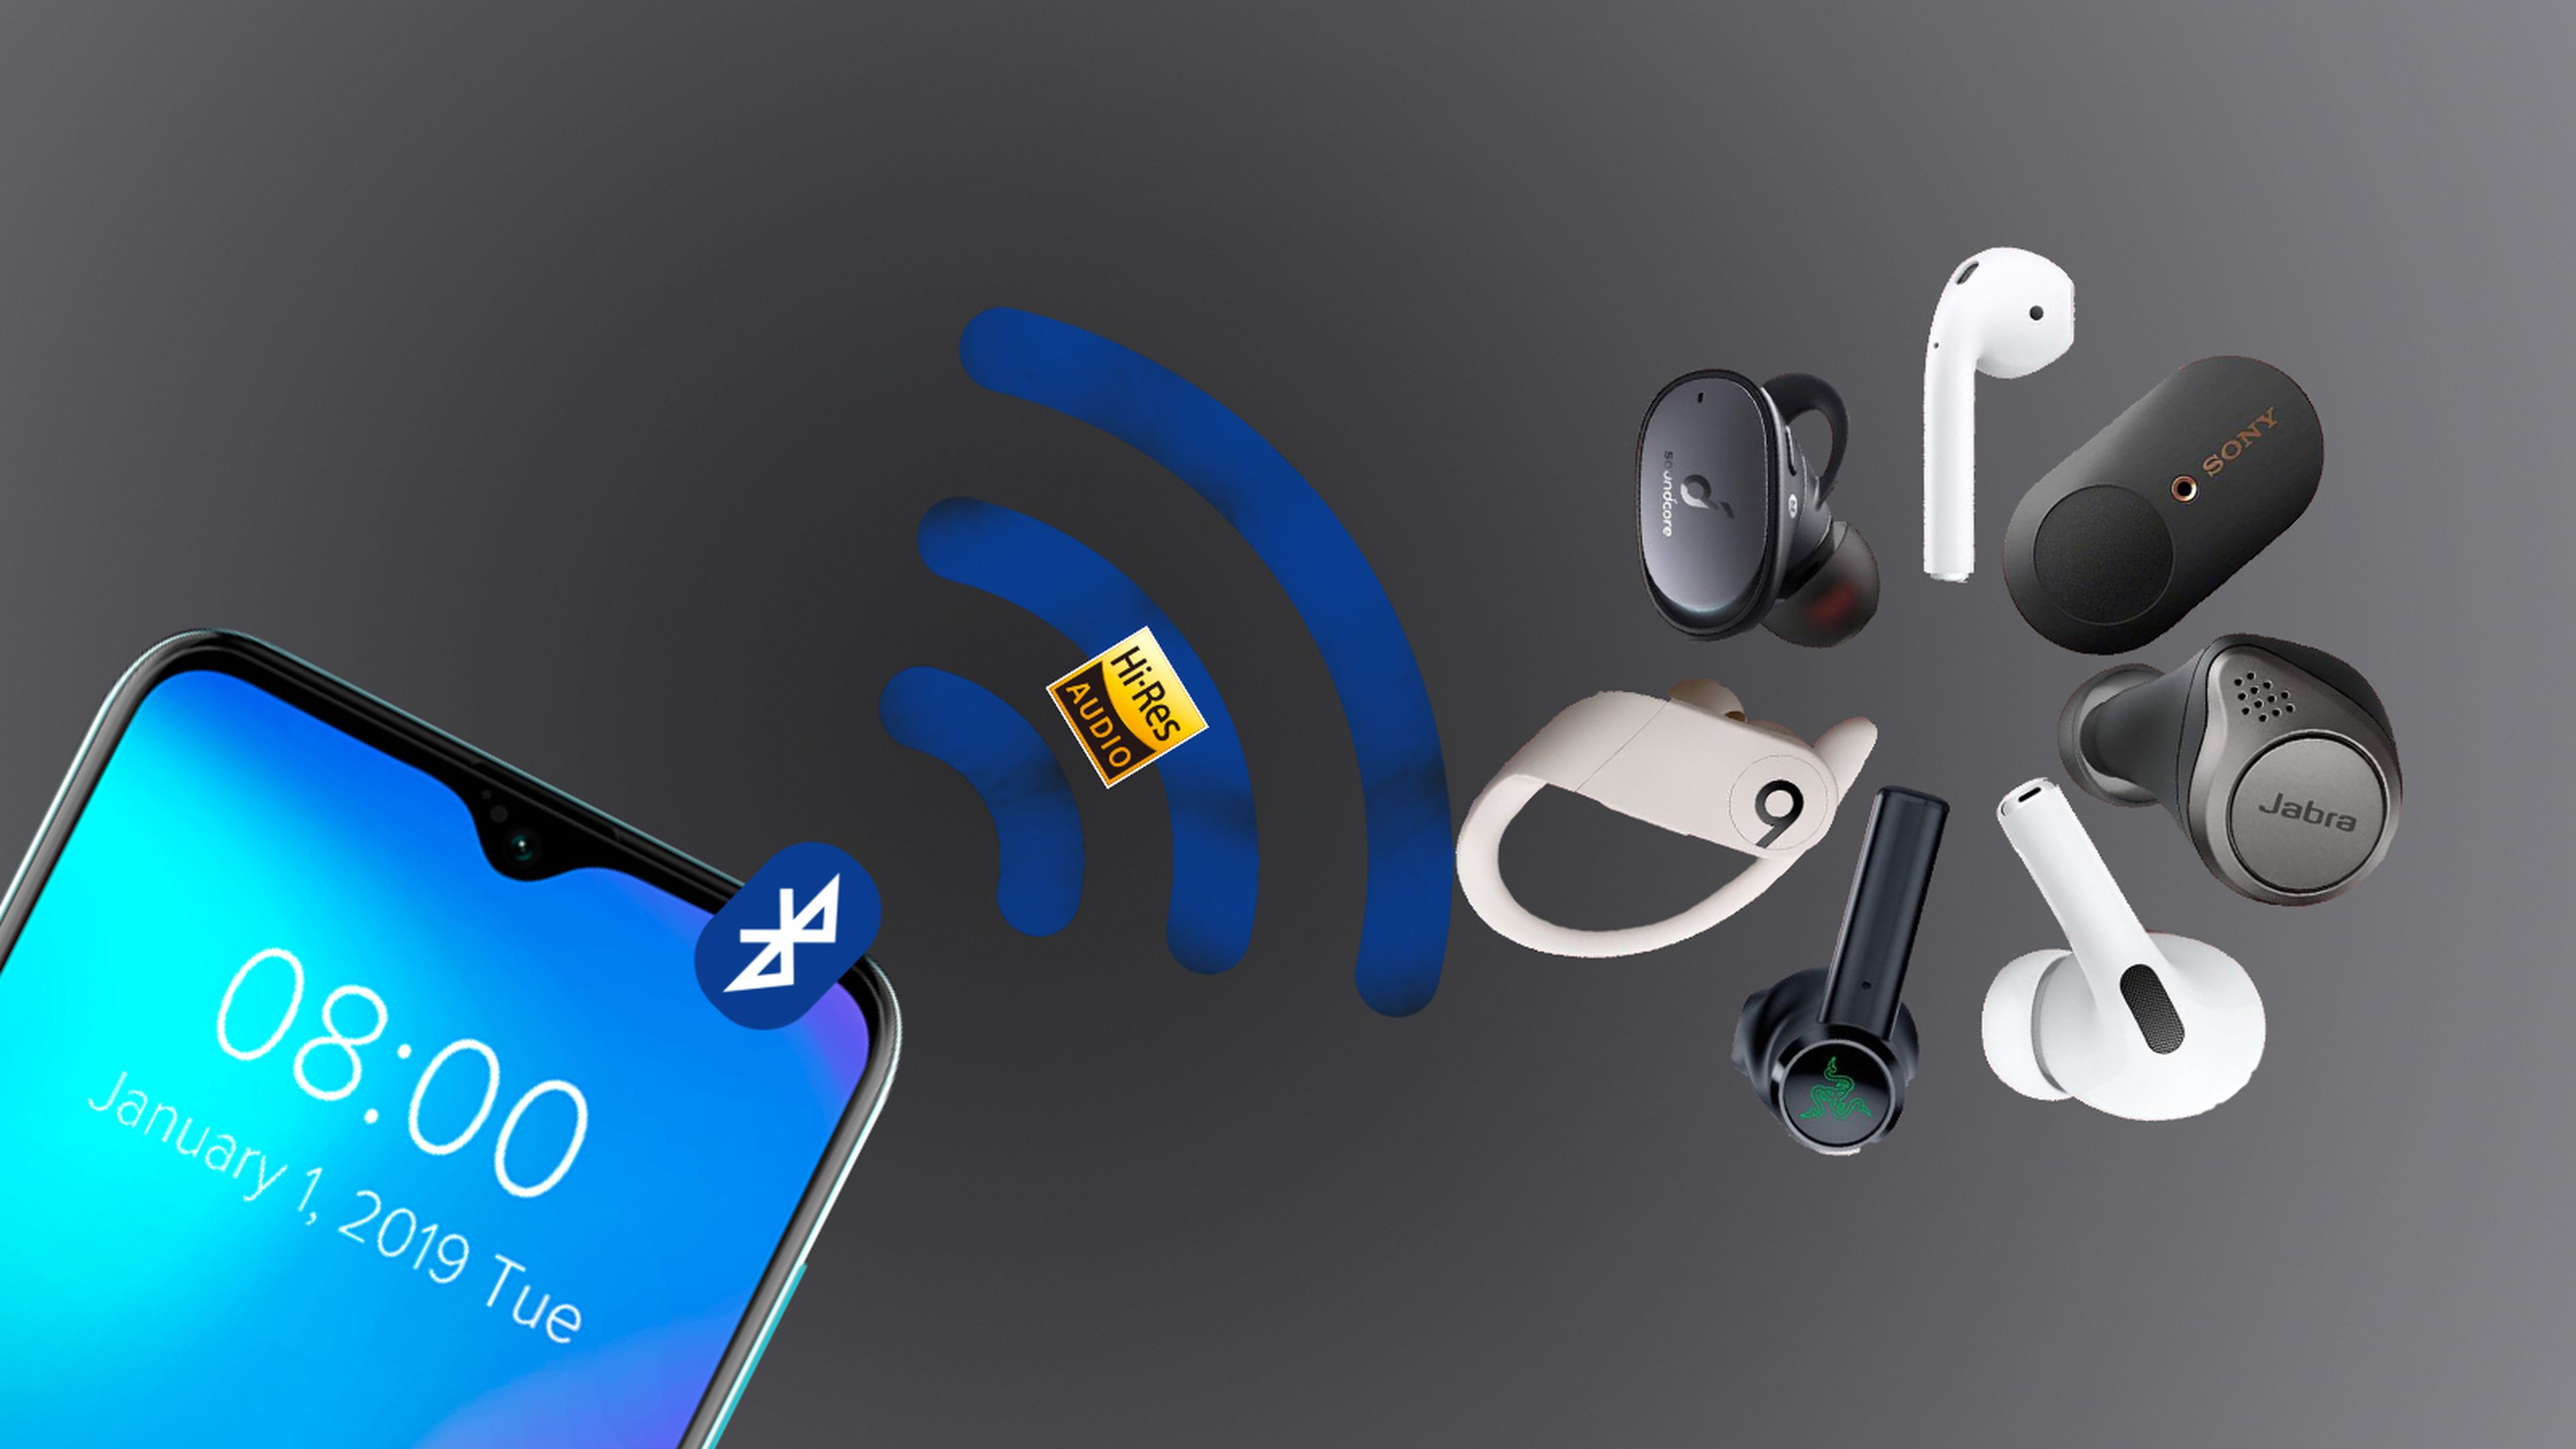 El tinder Hi-Res de auriculares inalámbricos y tu móvil